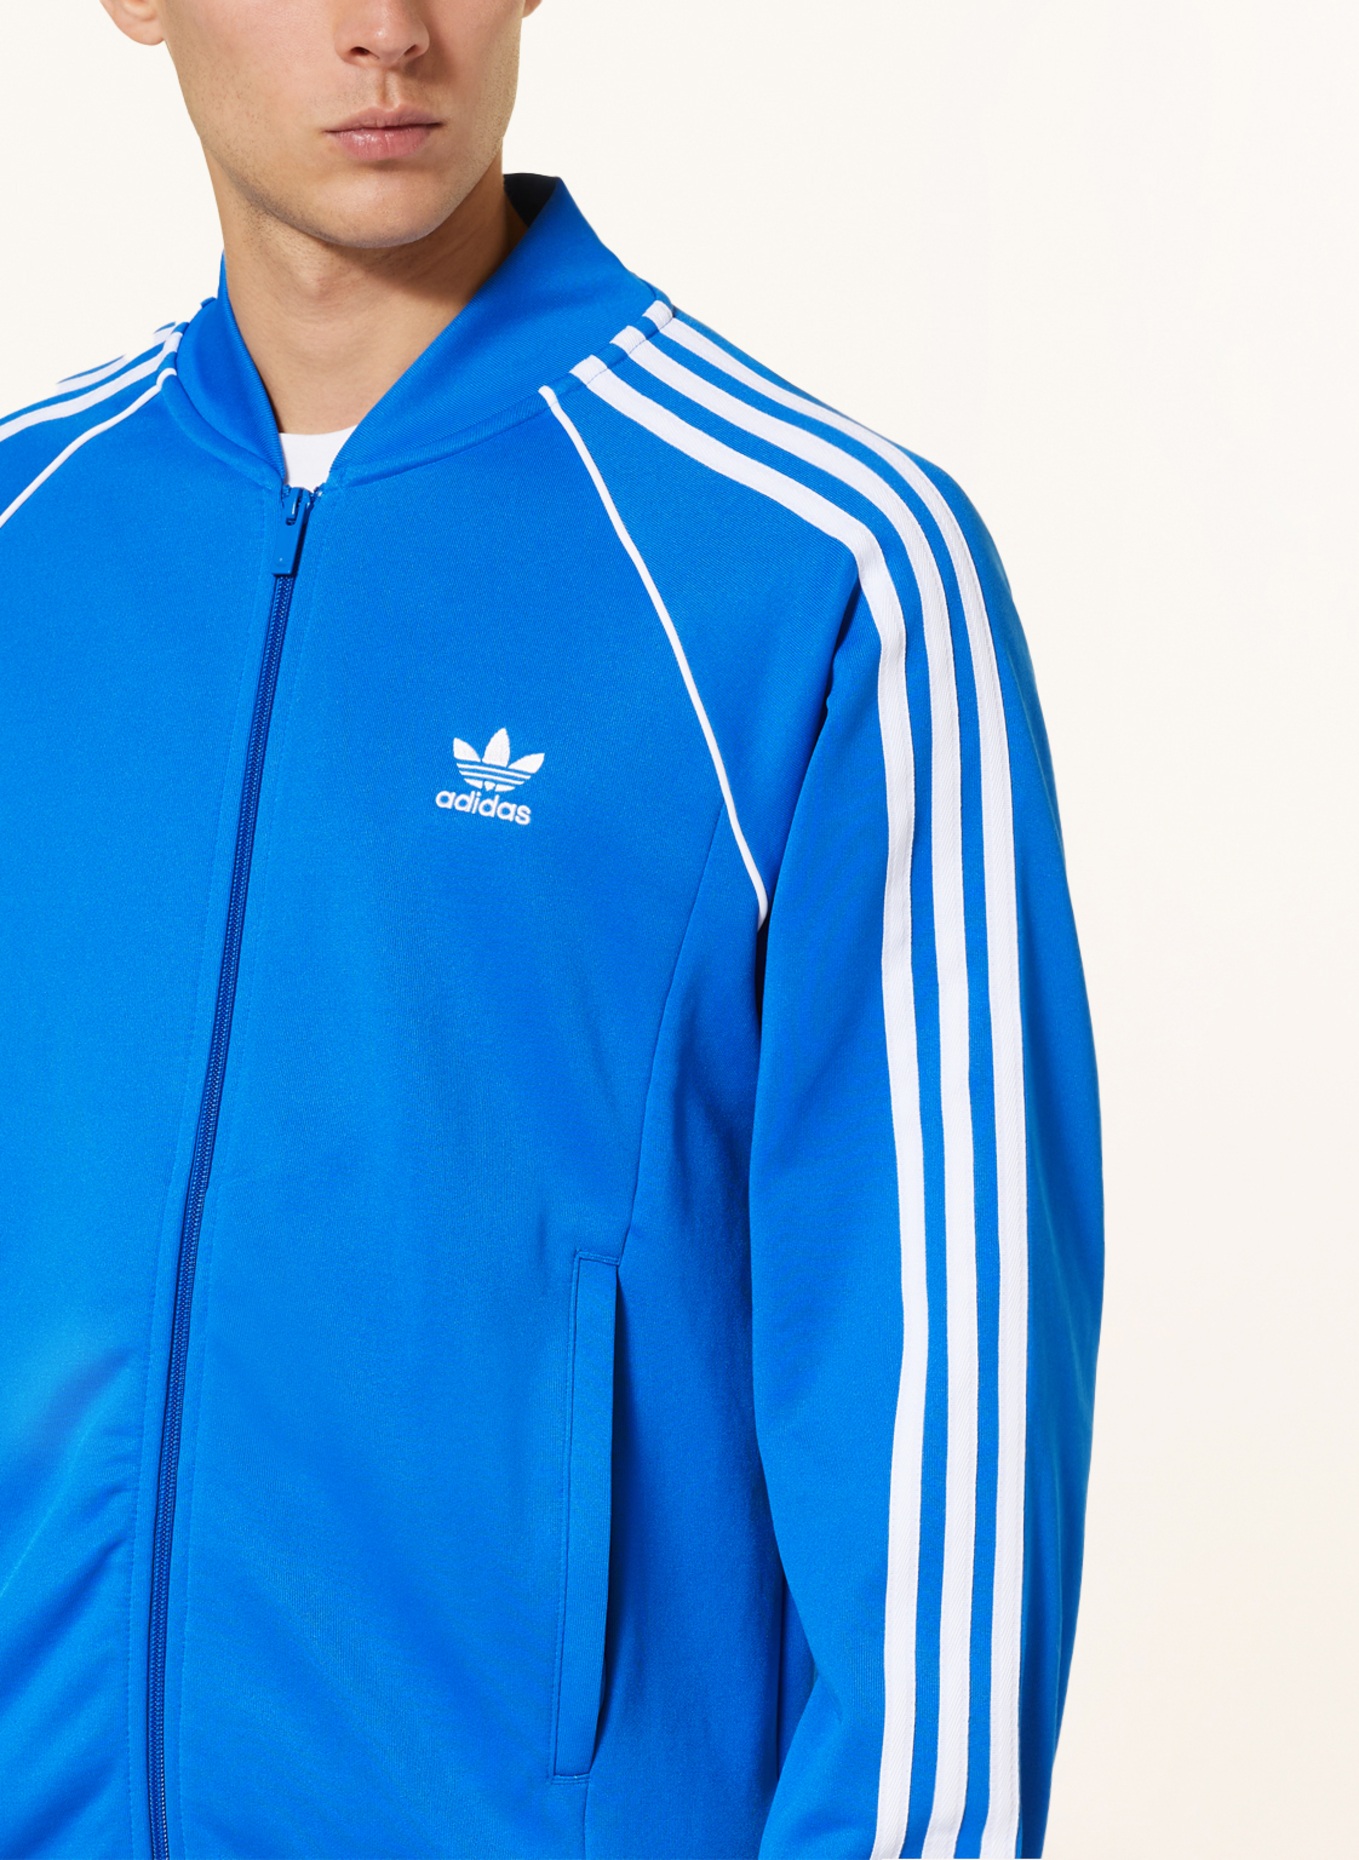 ADICOLOR jacket ORIGINALS SST Originals CLASSICS in white blue/ adidas Training